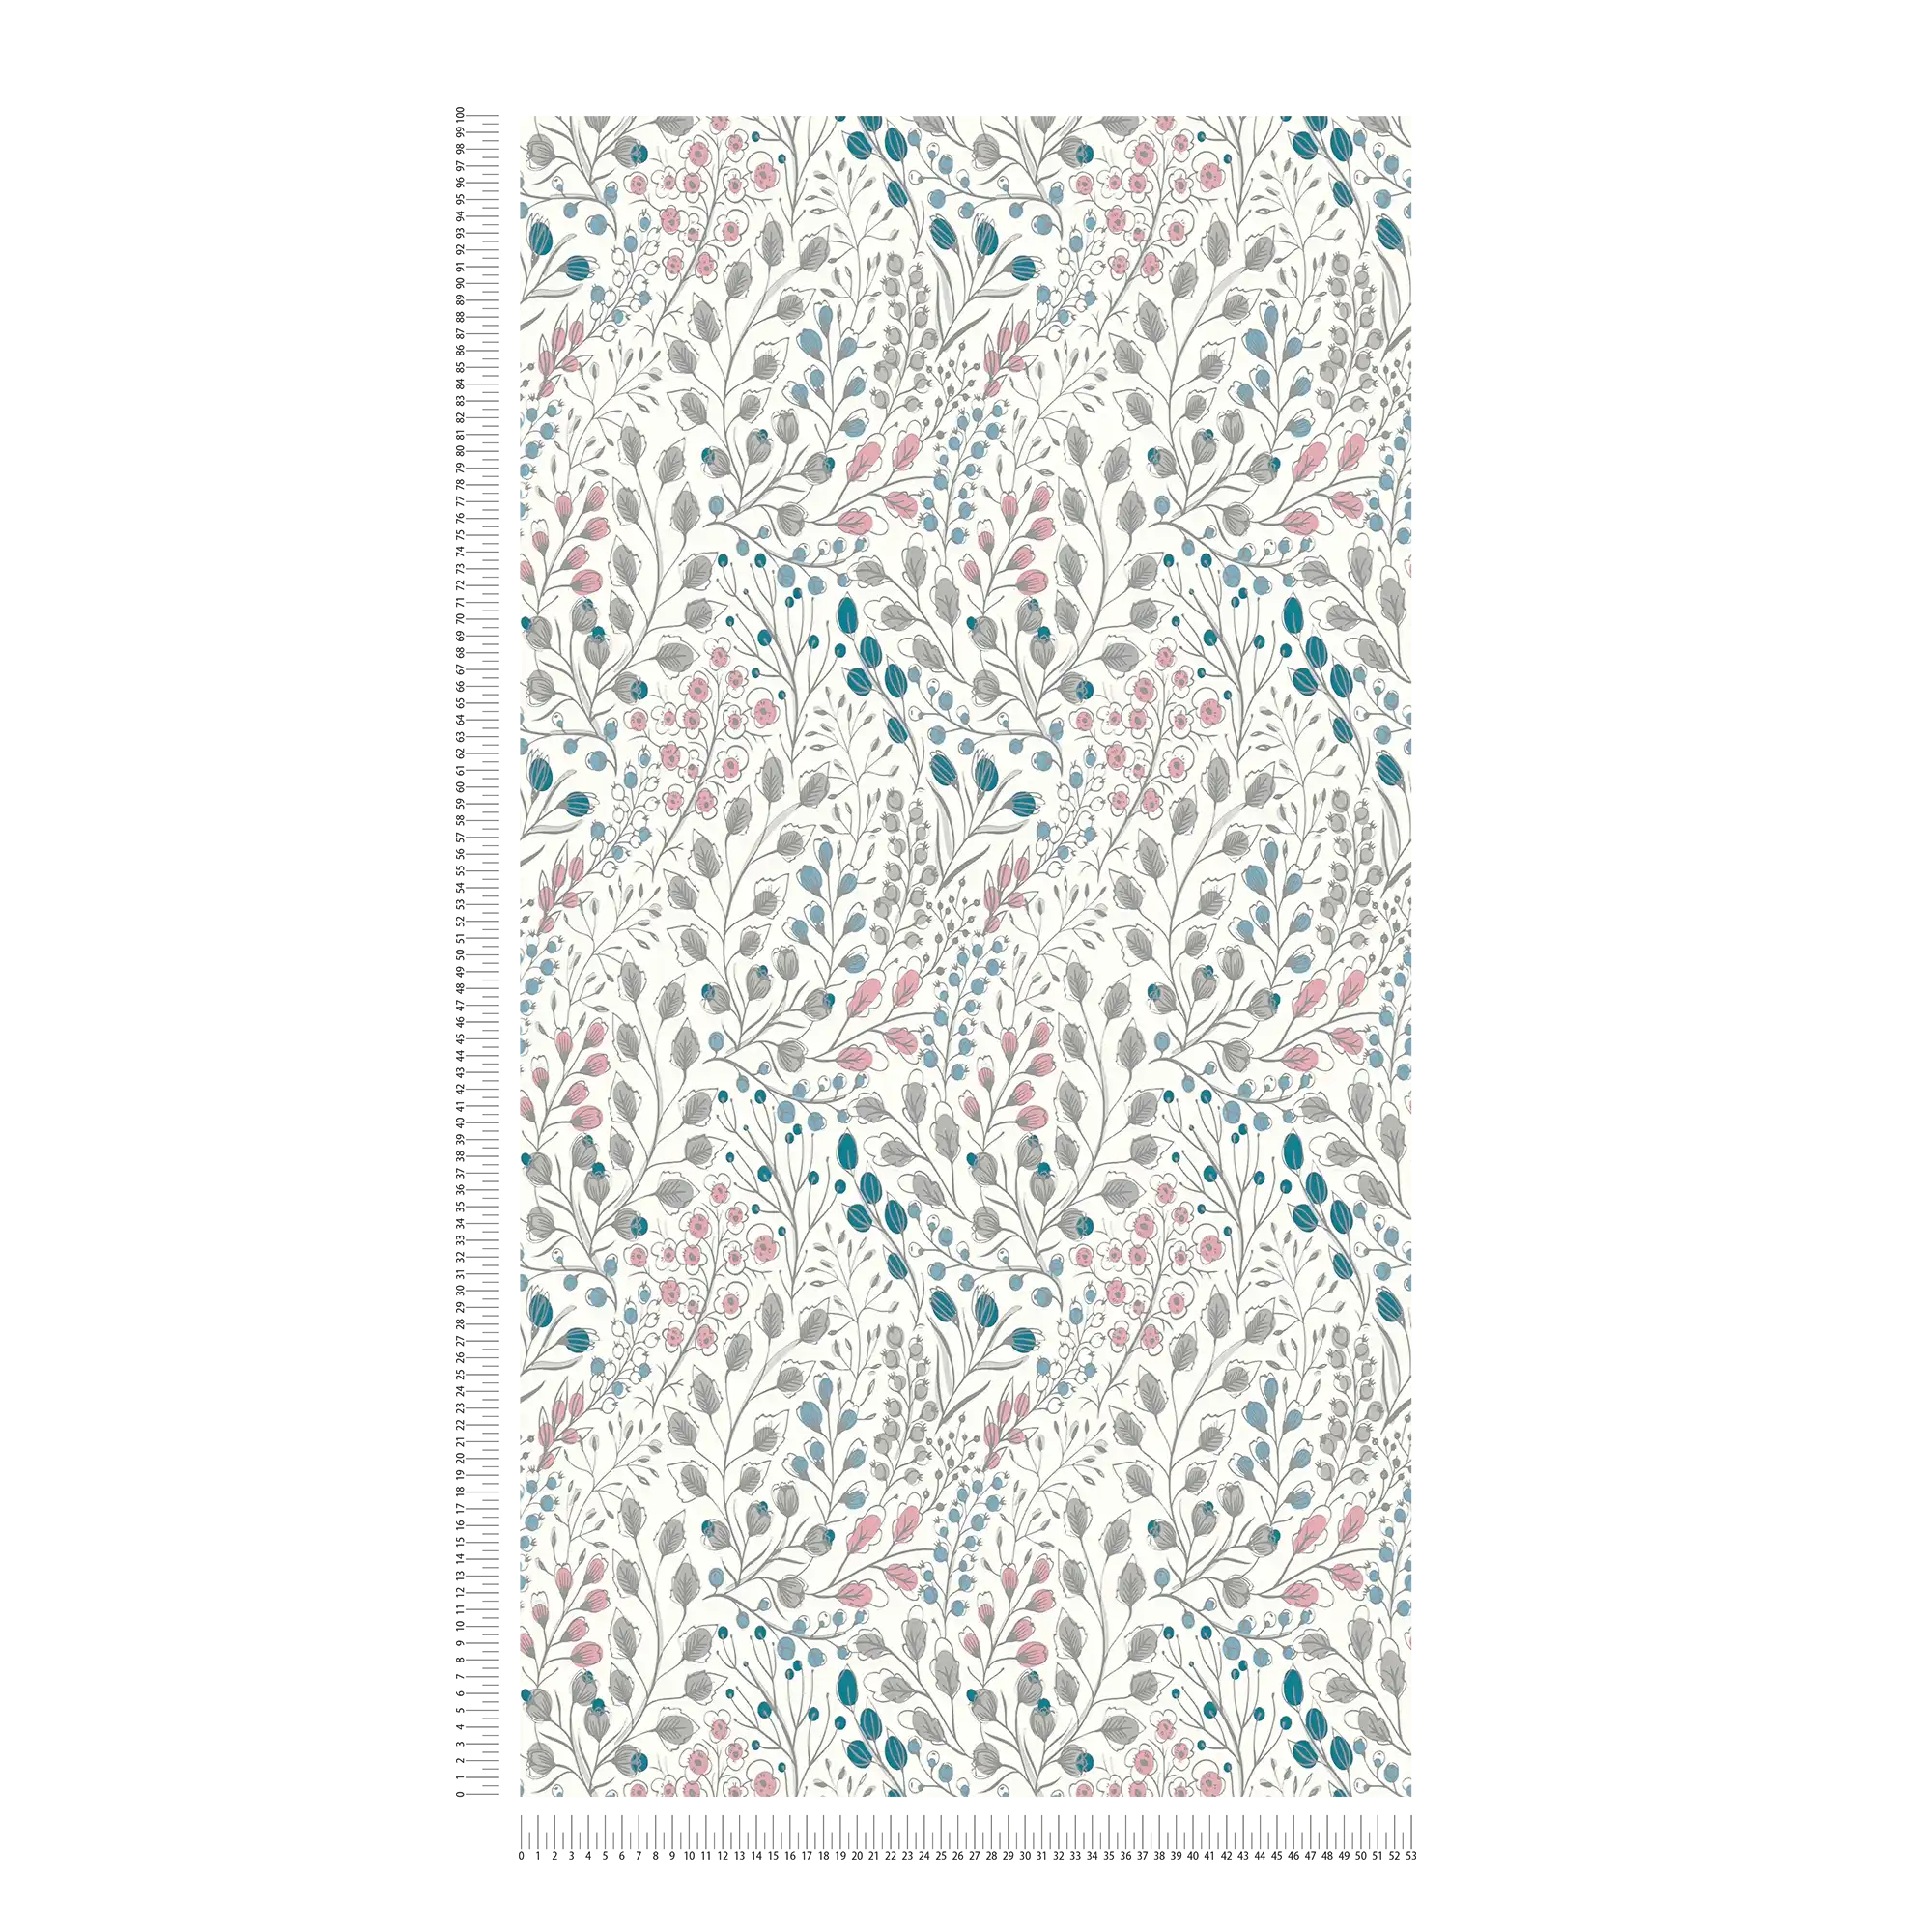             Papier peint intissé avec motif floral style dessin - blanc, rose, bleu
        